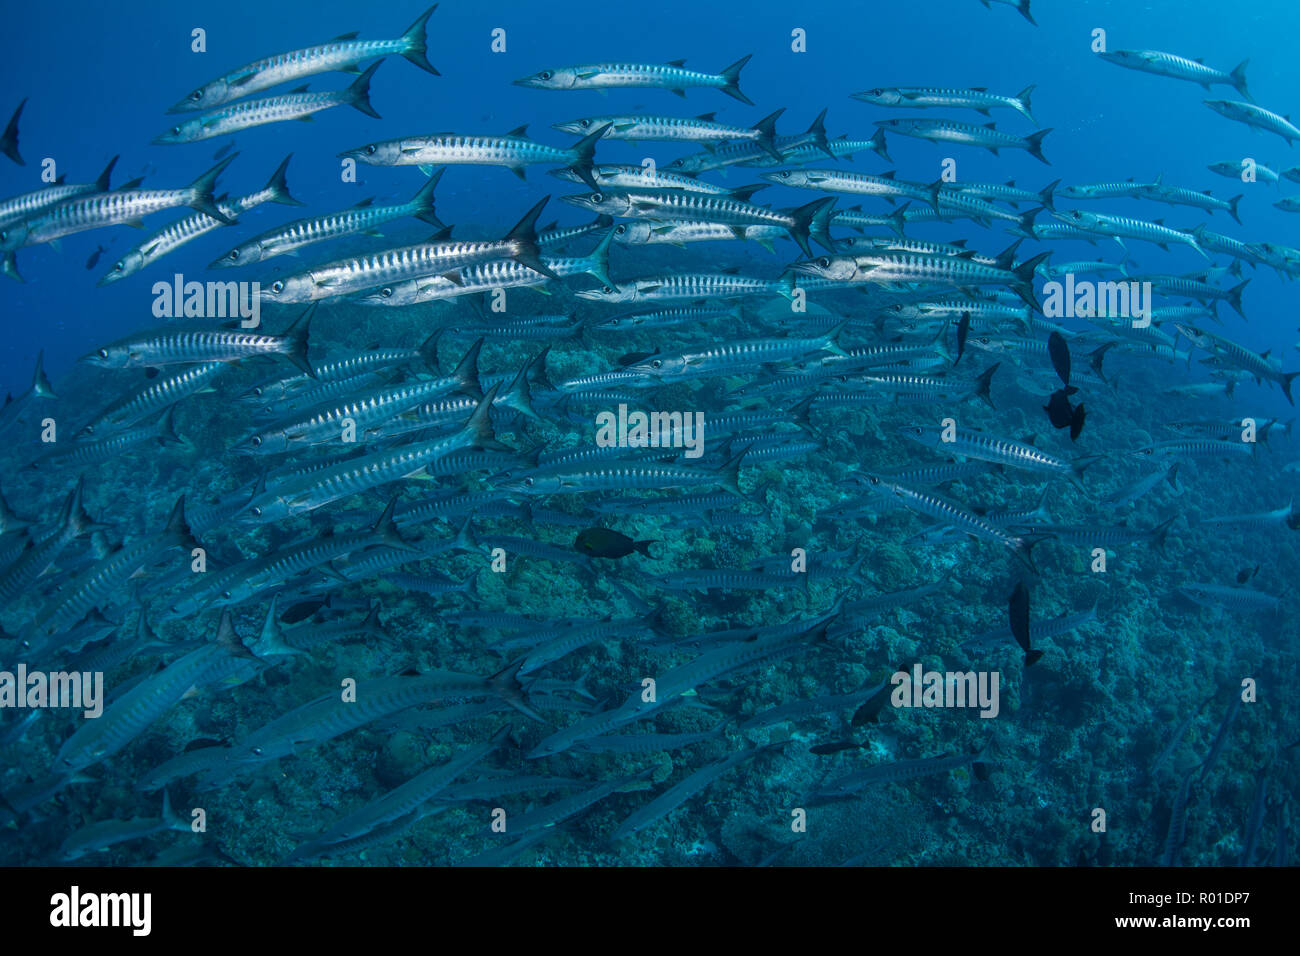 Una scuola di Blackfin barracuda nuota su una profonda Coral reef nelle isole Salomone. Questa zona è conosciuta per la sua straordinaria biodiversità marina. Foto Stock